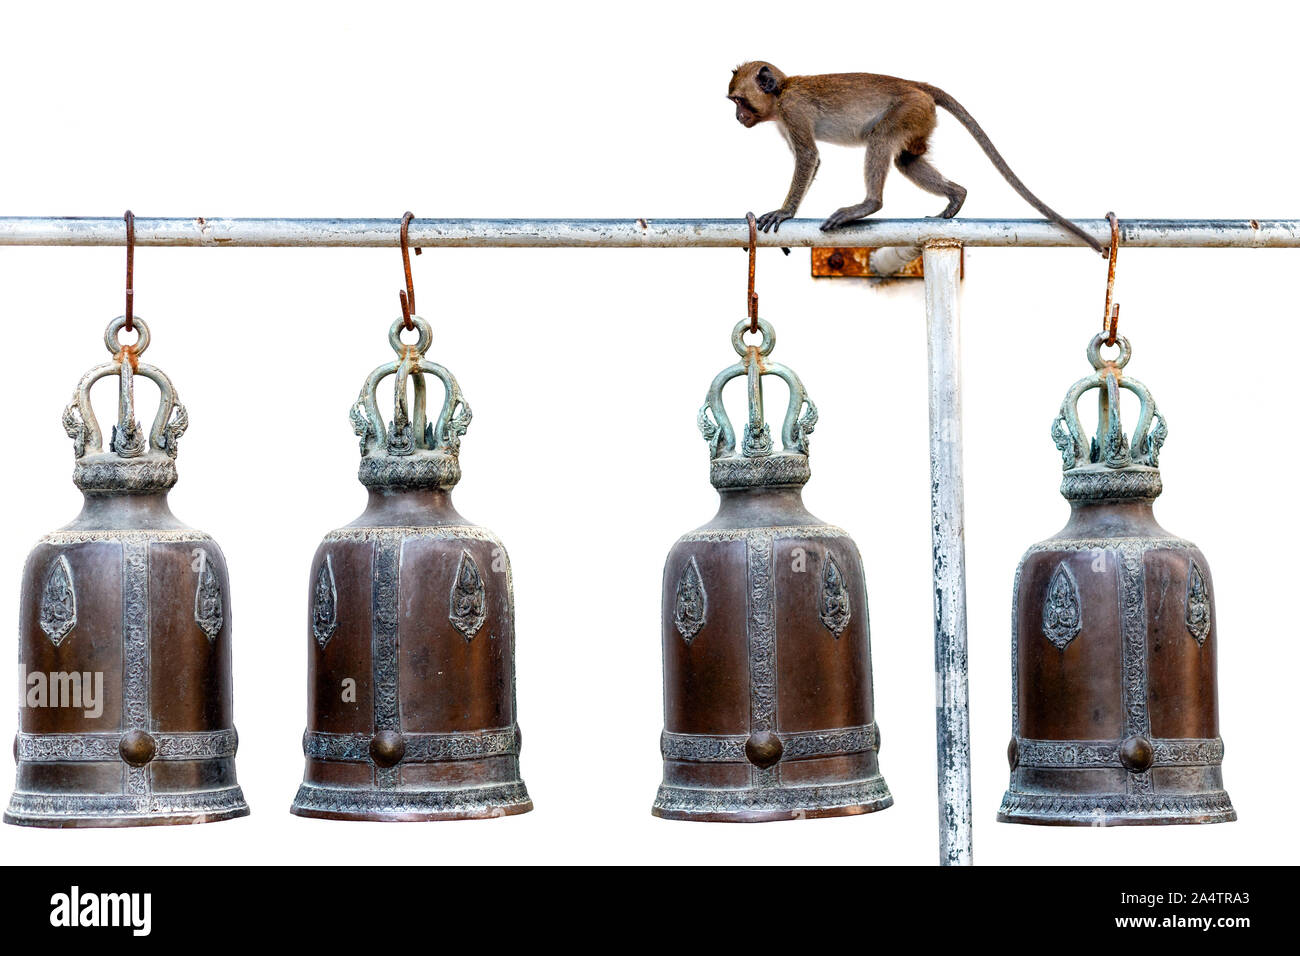 Monkey camminando su un palo metallico con tempio Buddista campane isolati su sfondo bianco Foto Stock